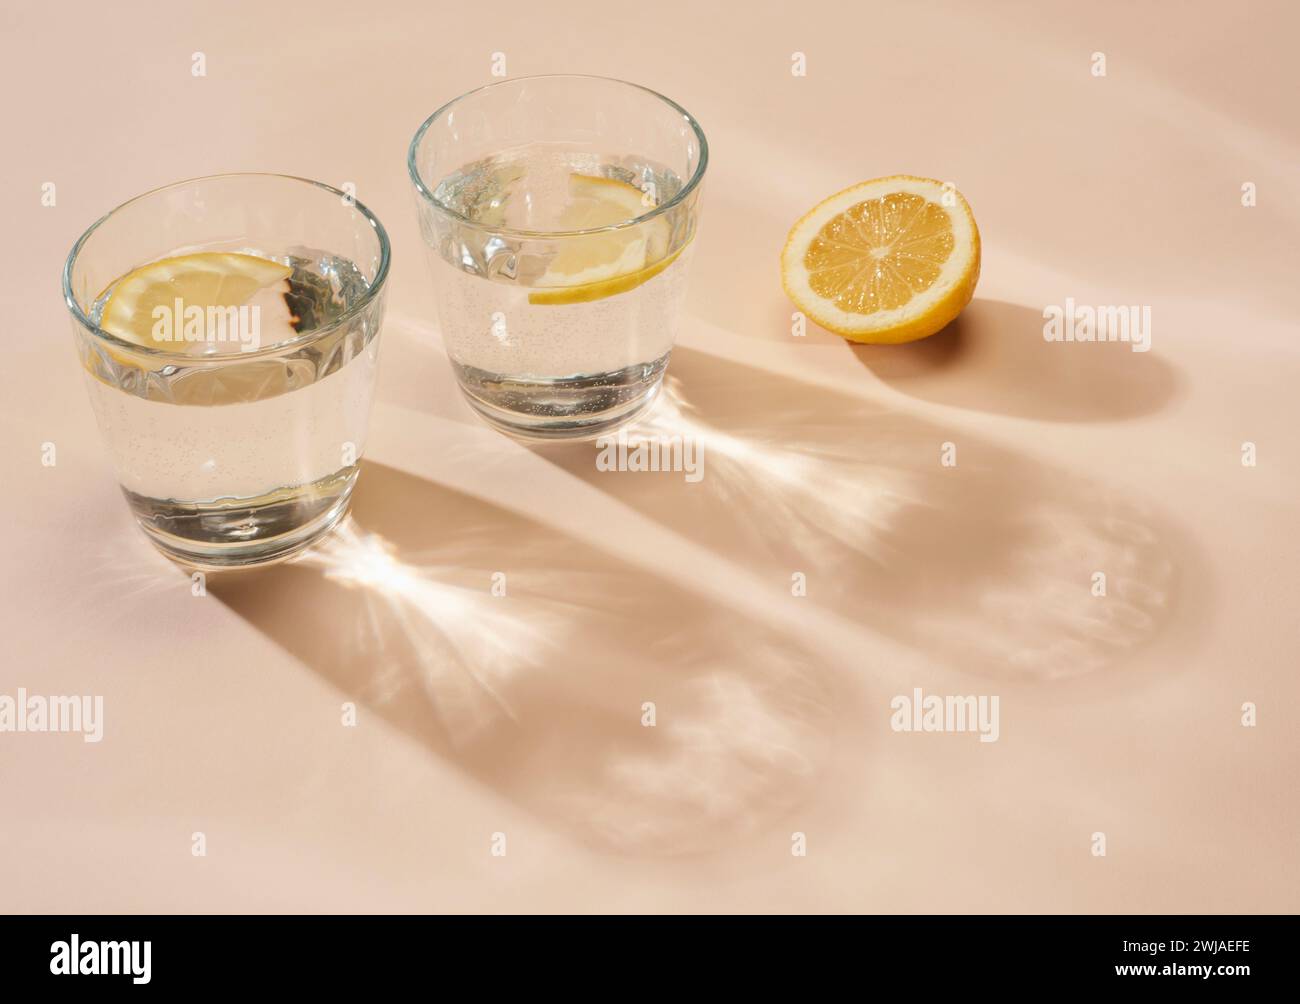 Bicchieri d'acqua con limone a fette su sfondo color crema, con ombre Foto Stock